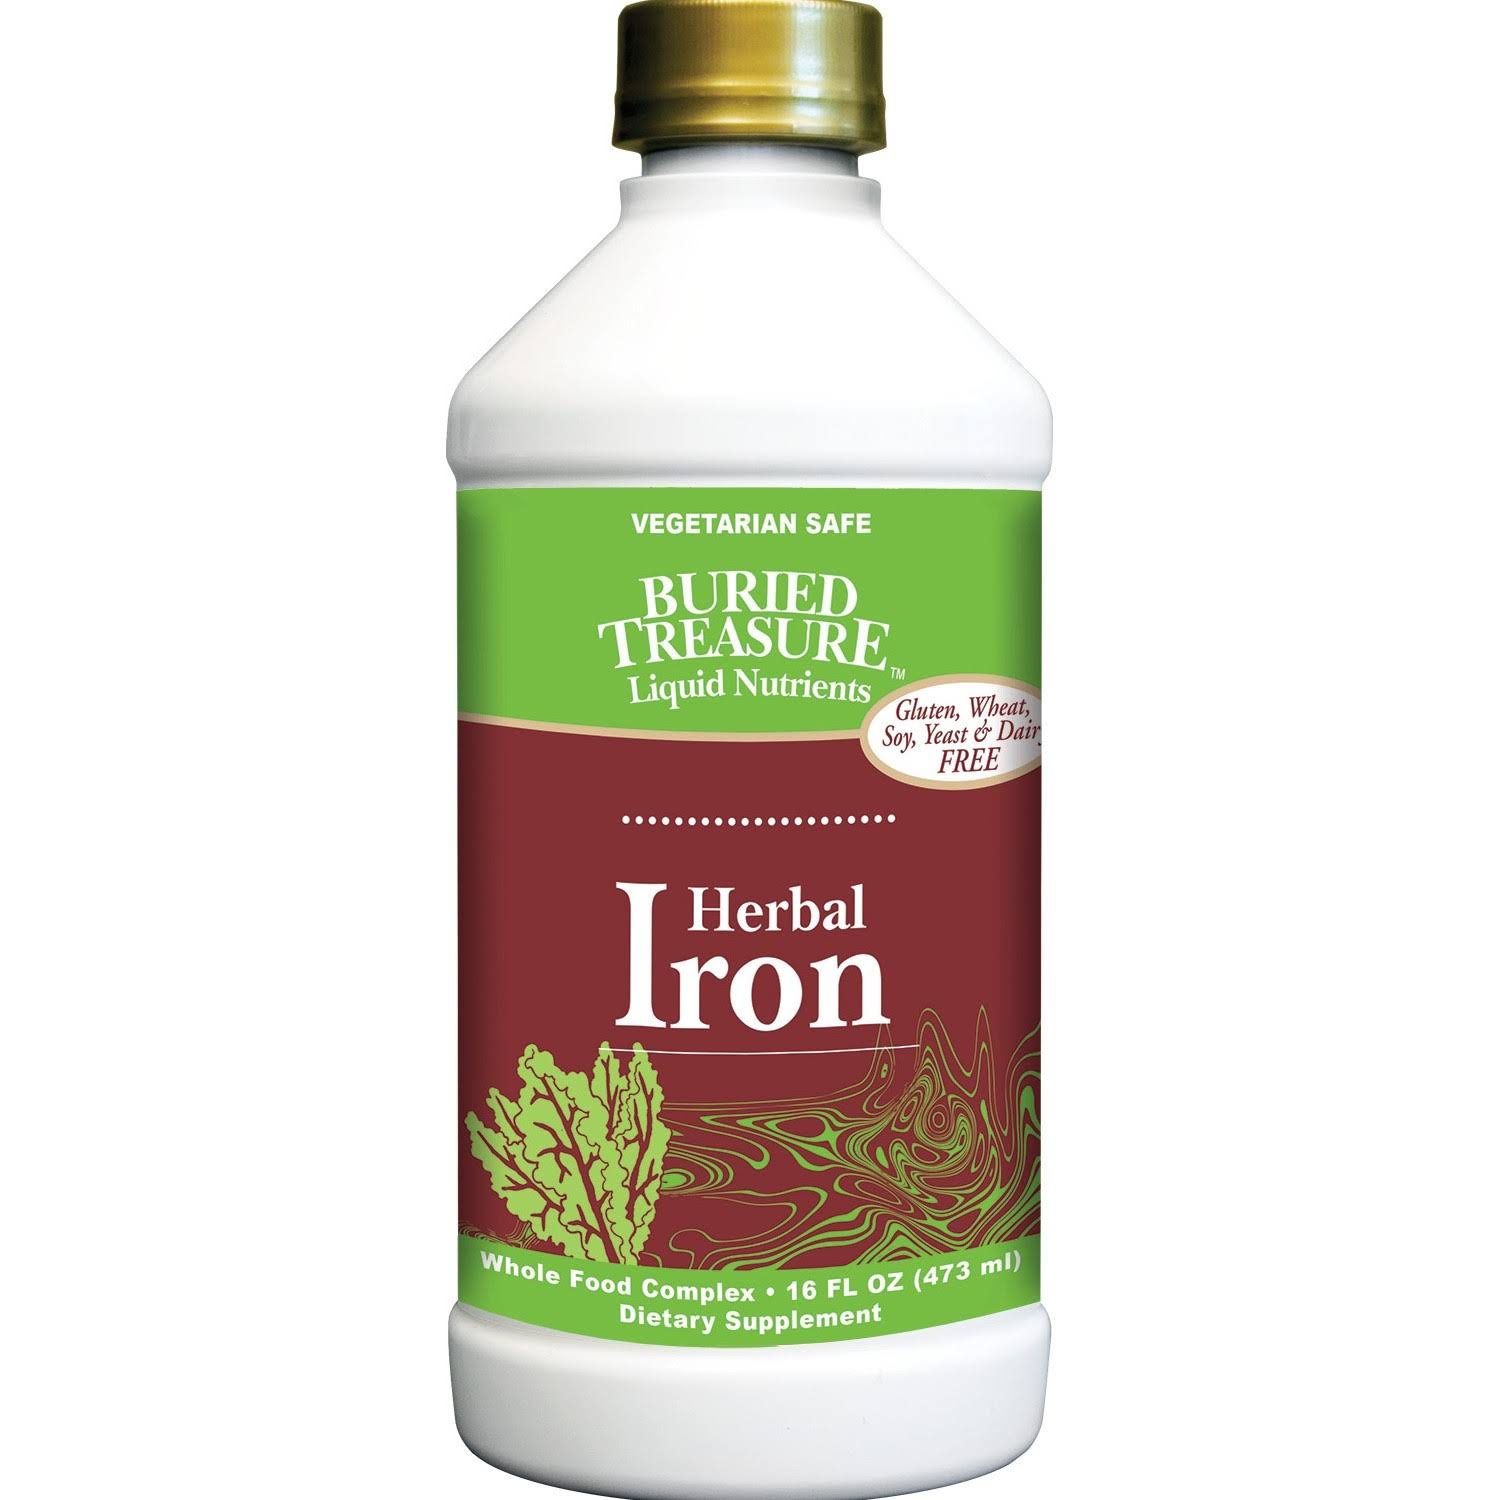 Buried Treasure Herbal Iron Dietary Supplement - 16oz